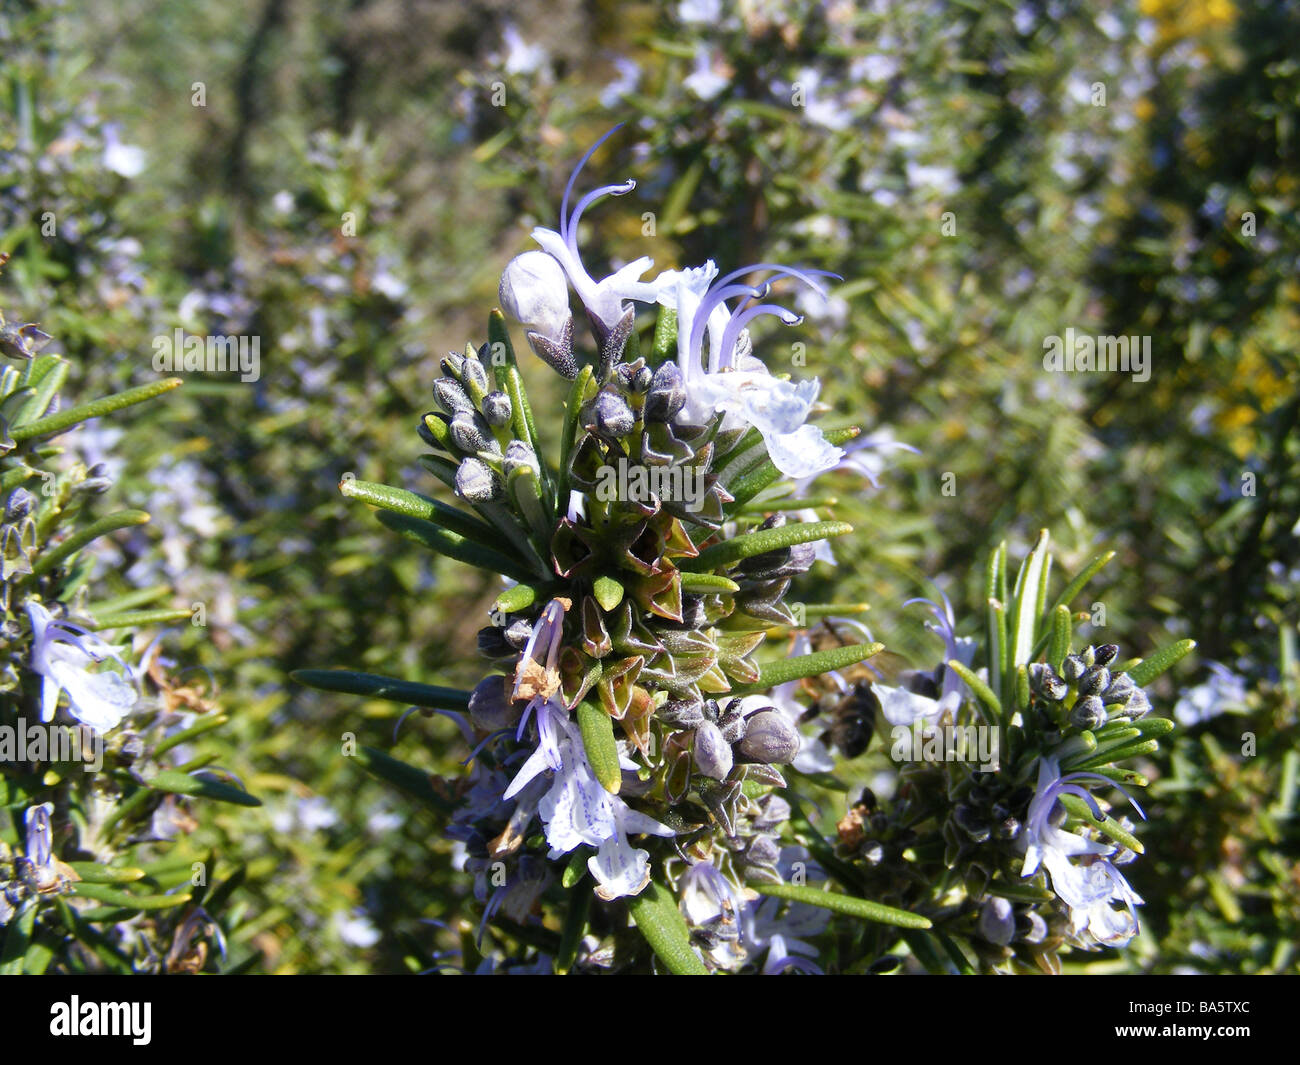 Rosemary in flower, Spain Stock Photo